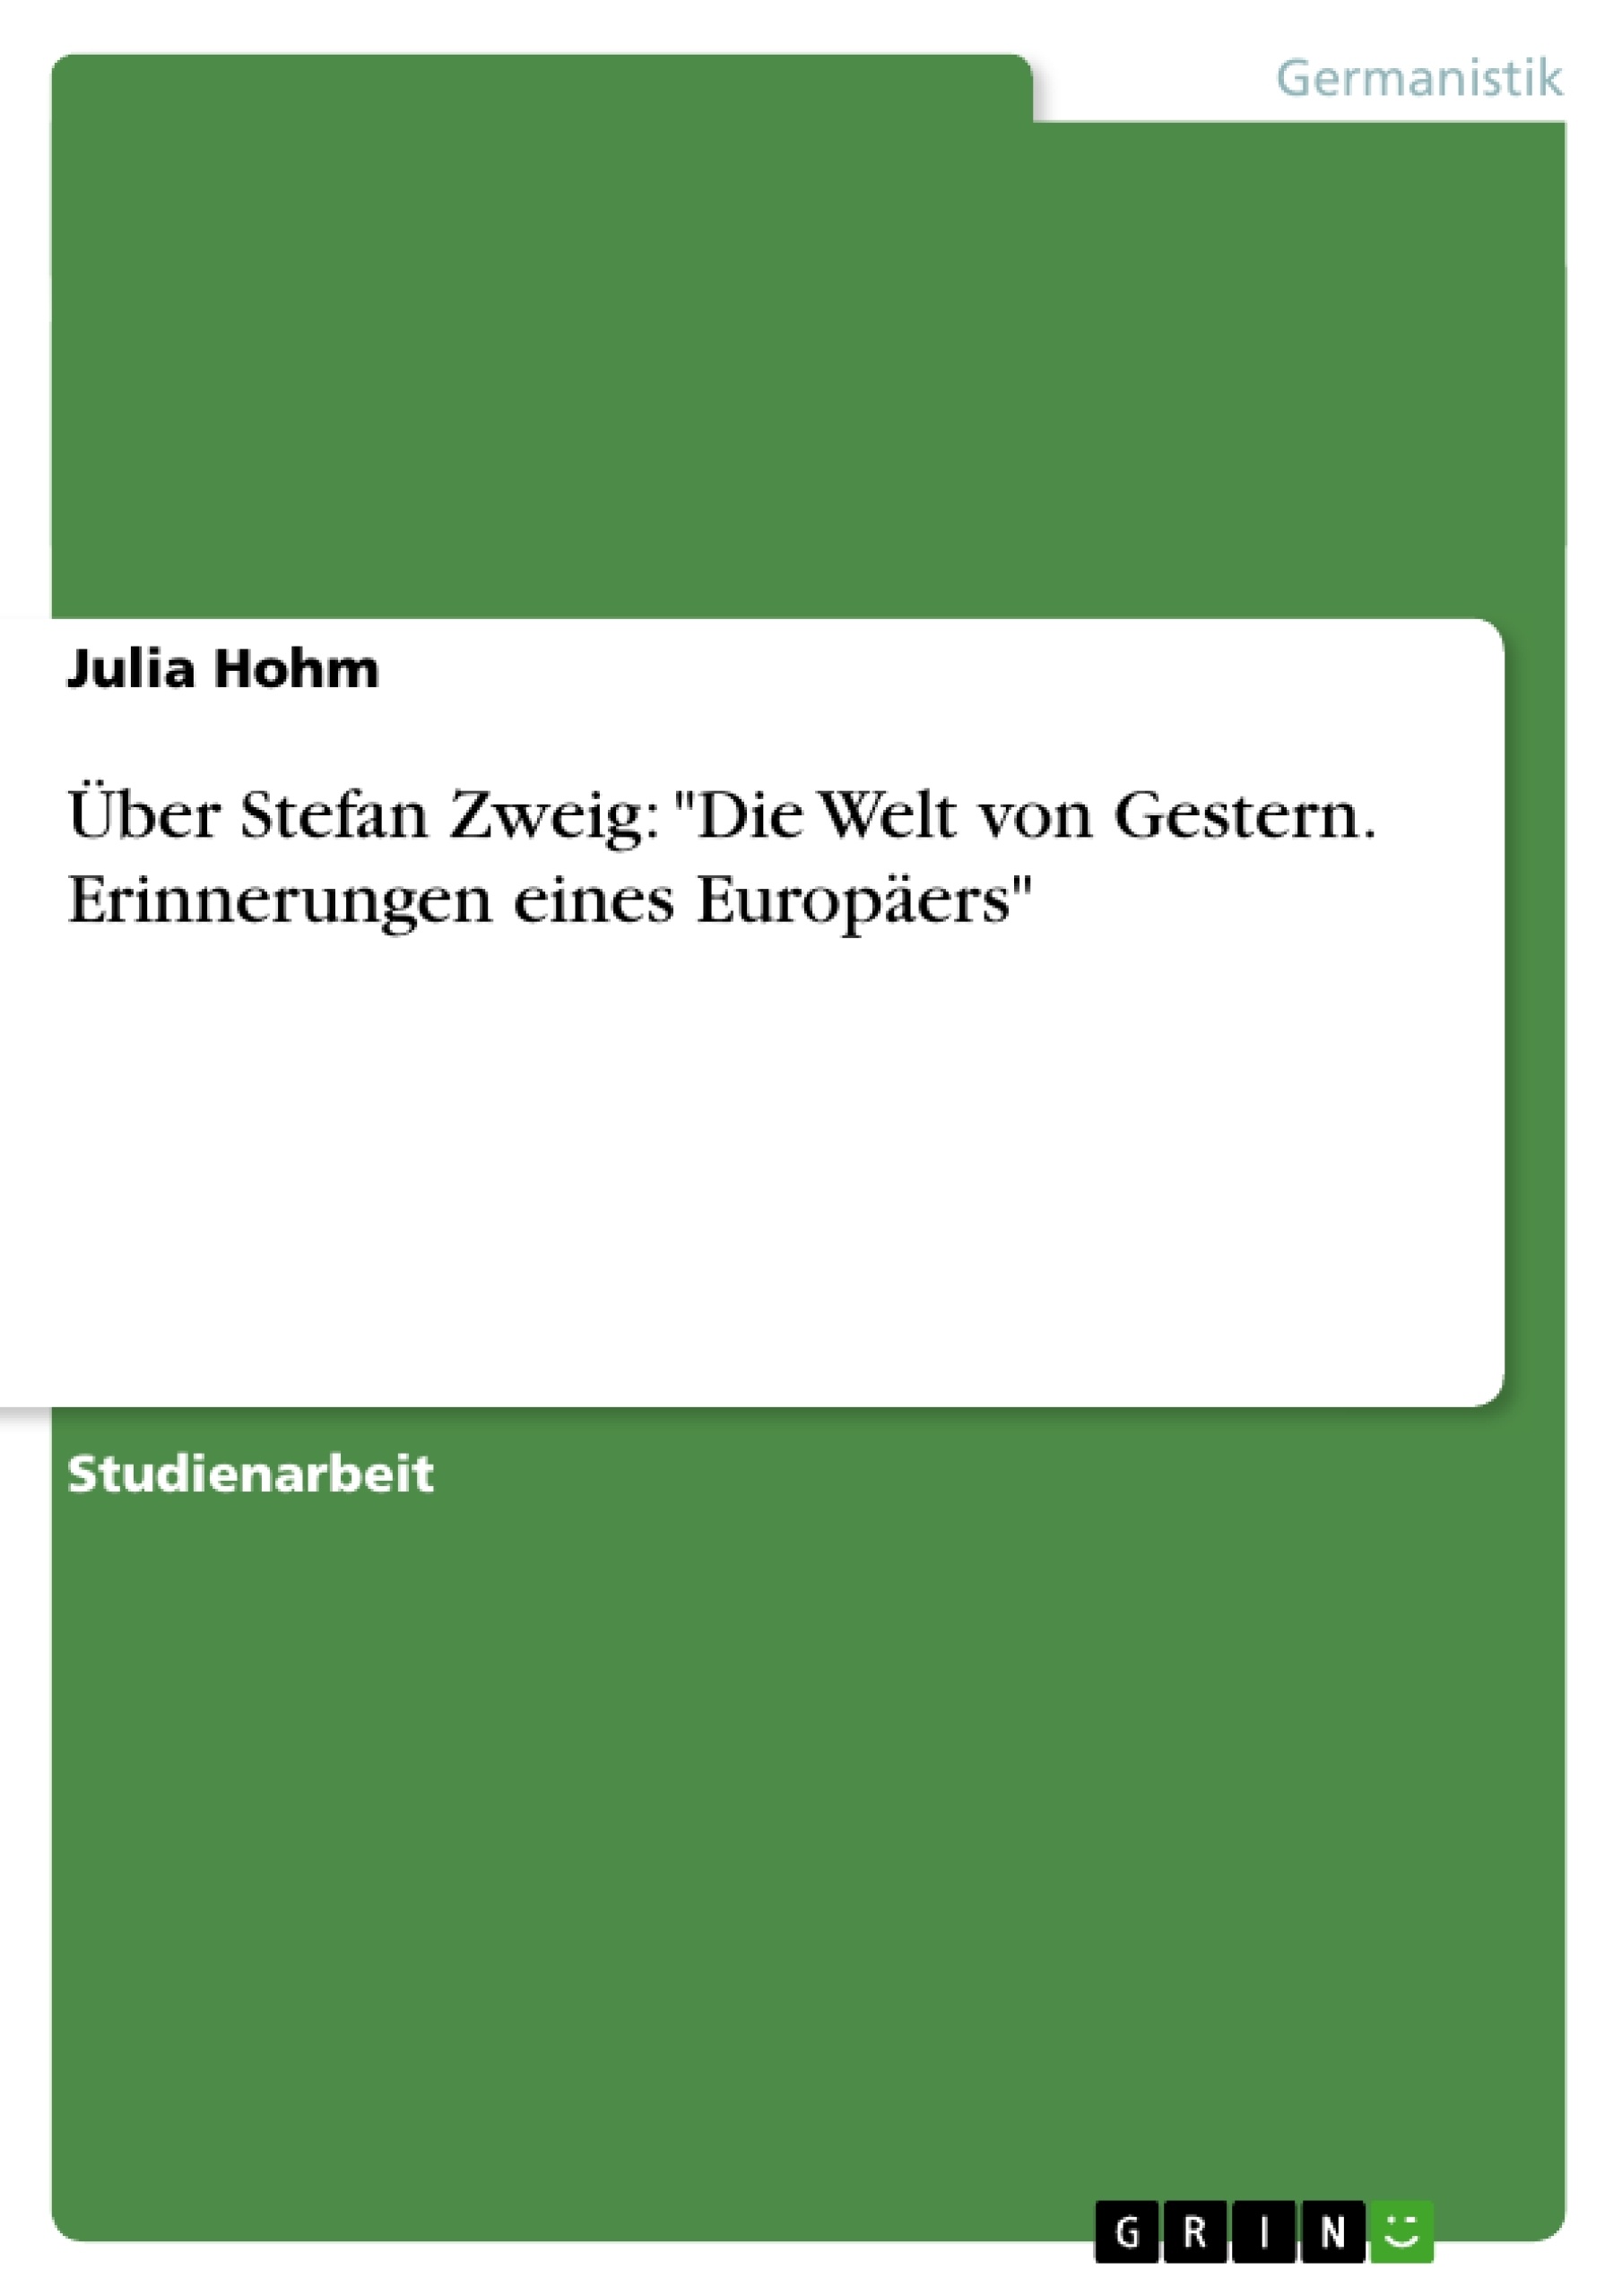 Titre: Über Stefan Zweig: "Die Welt von Gestern. Erinnerungen eines Europäers"